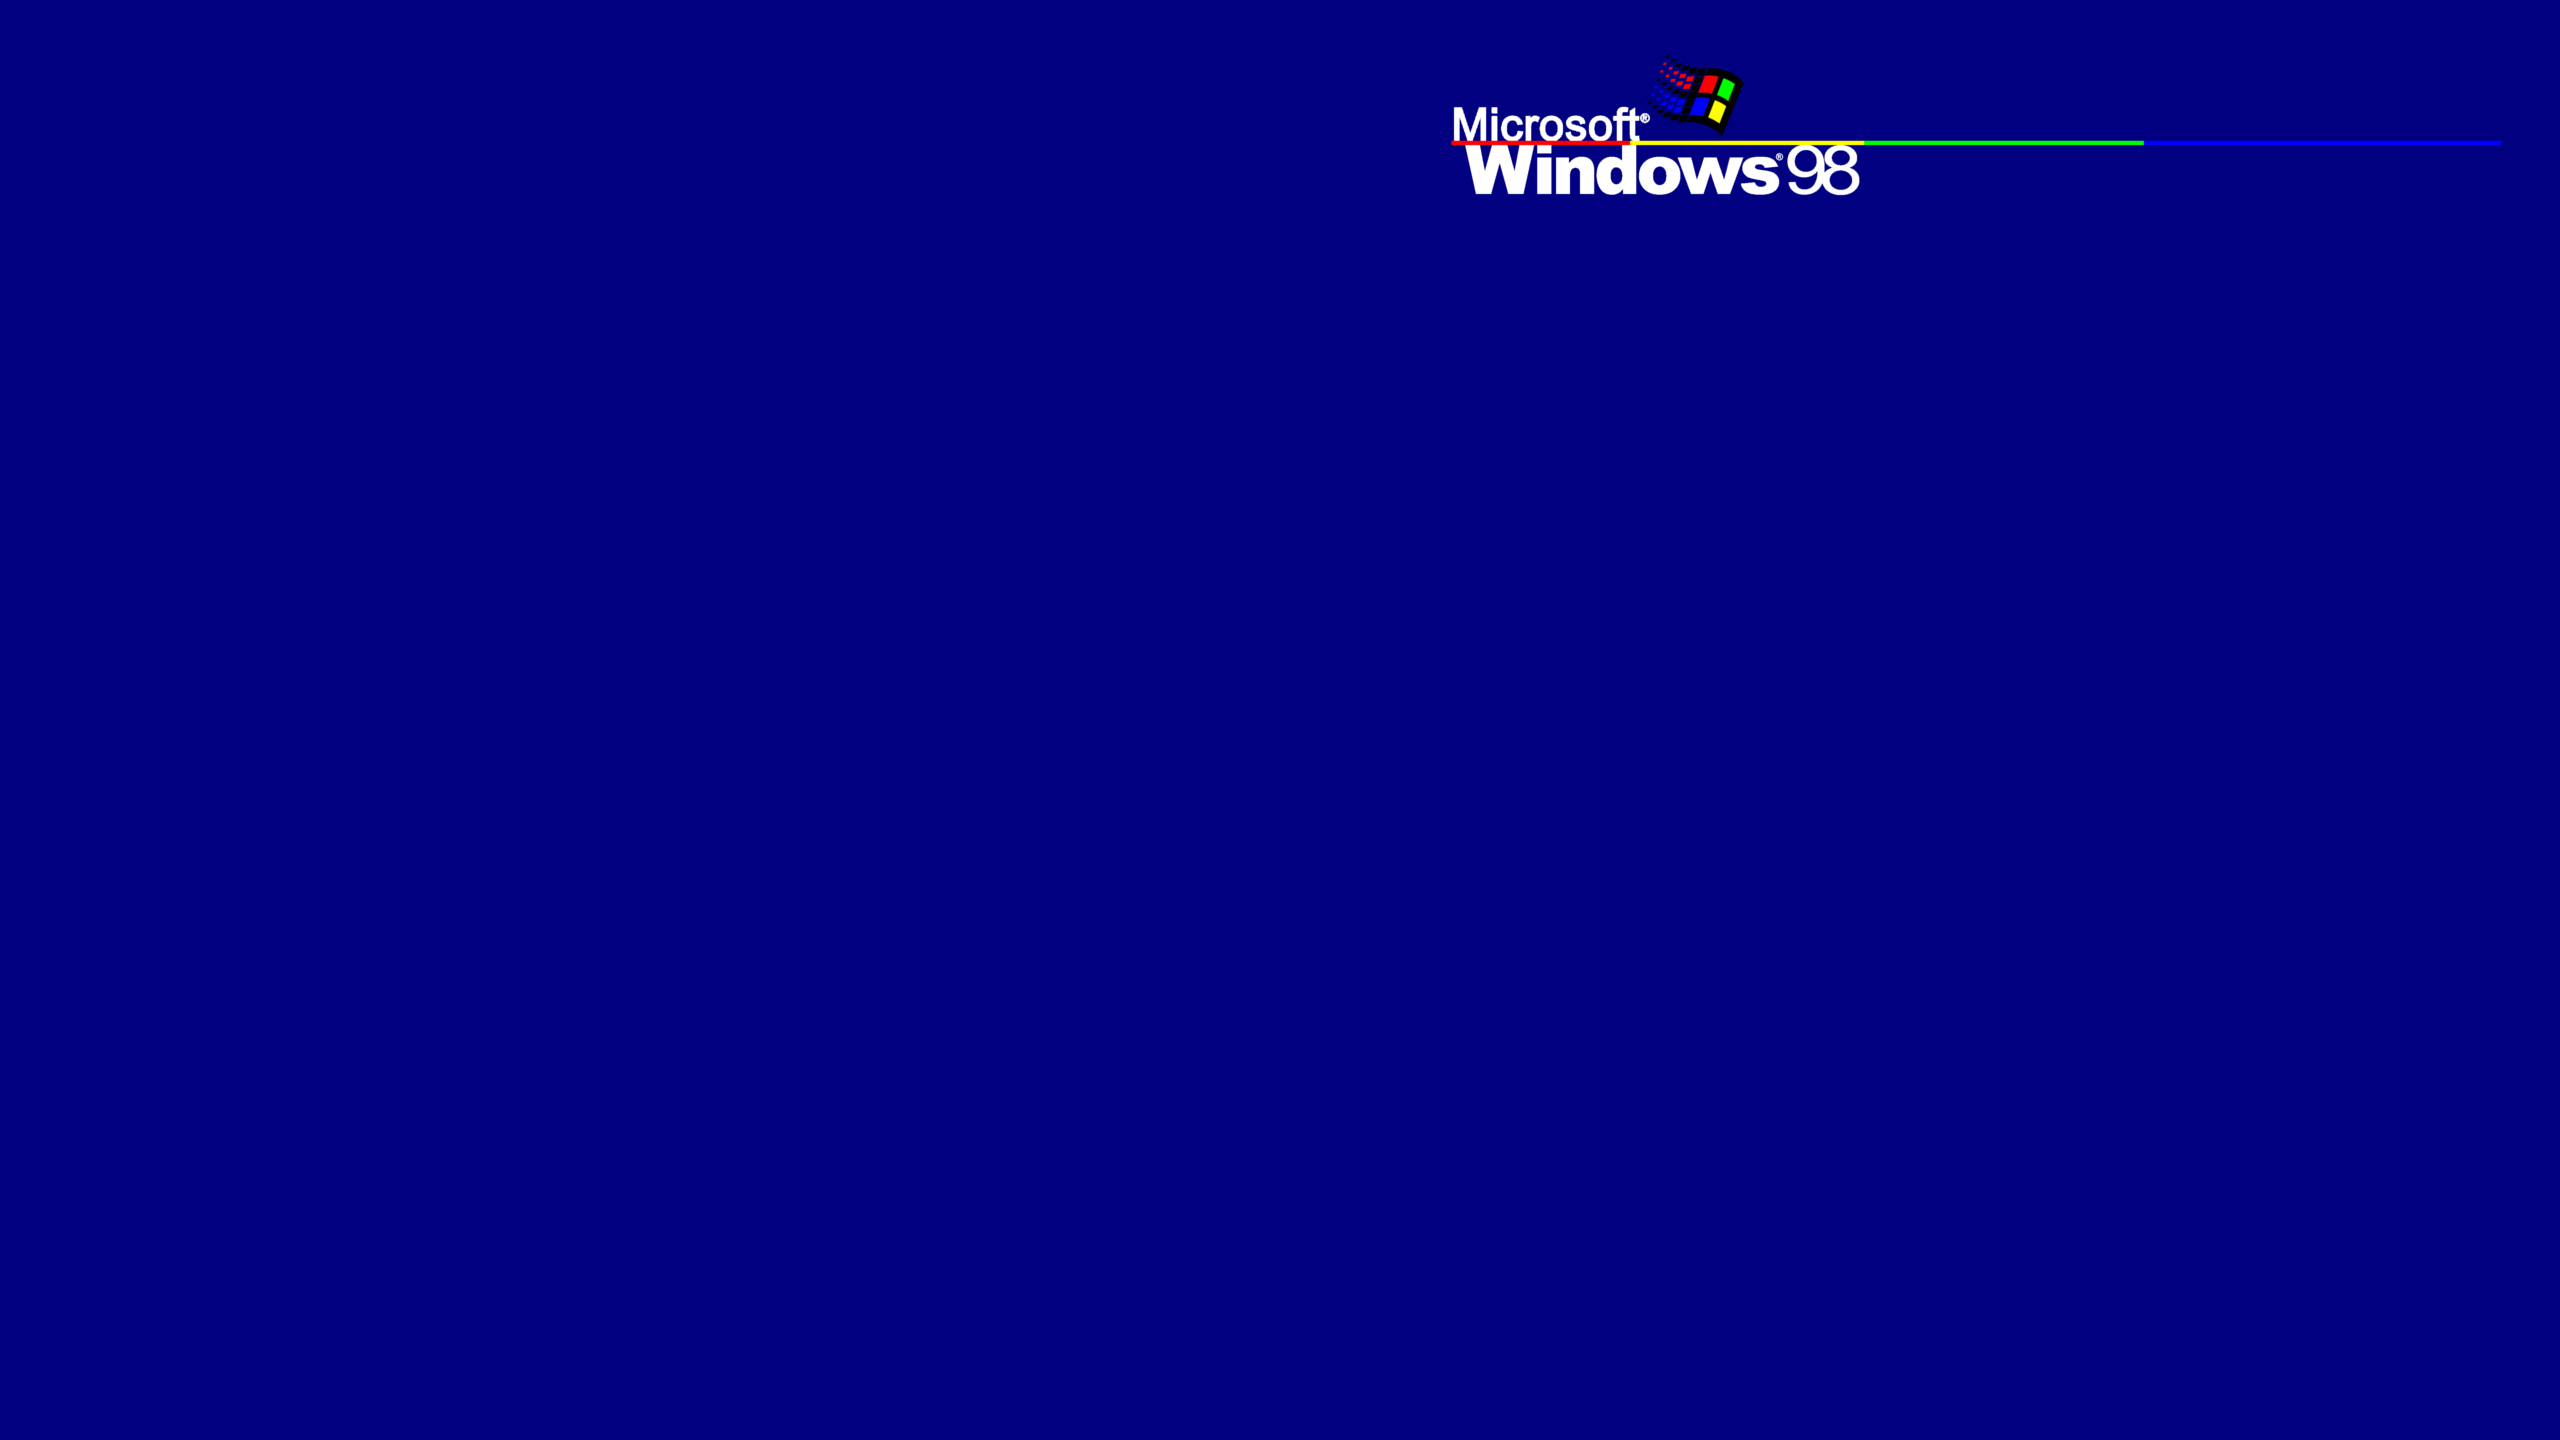 Microsoft Microsoft Windows Windows 95 Windows 98 2560x1440